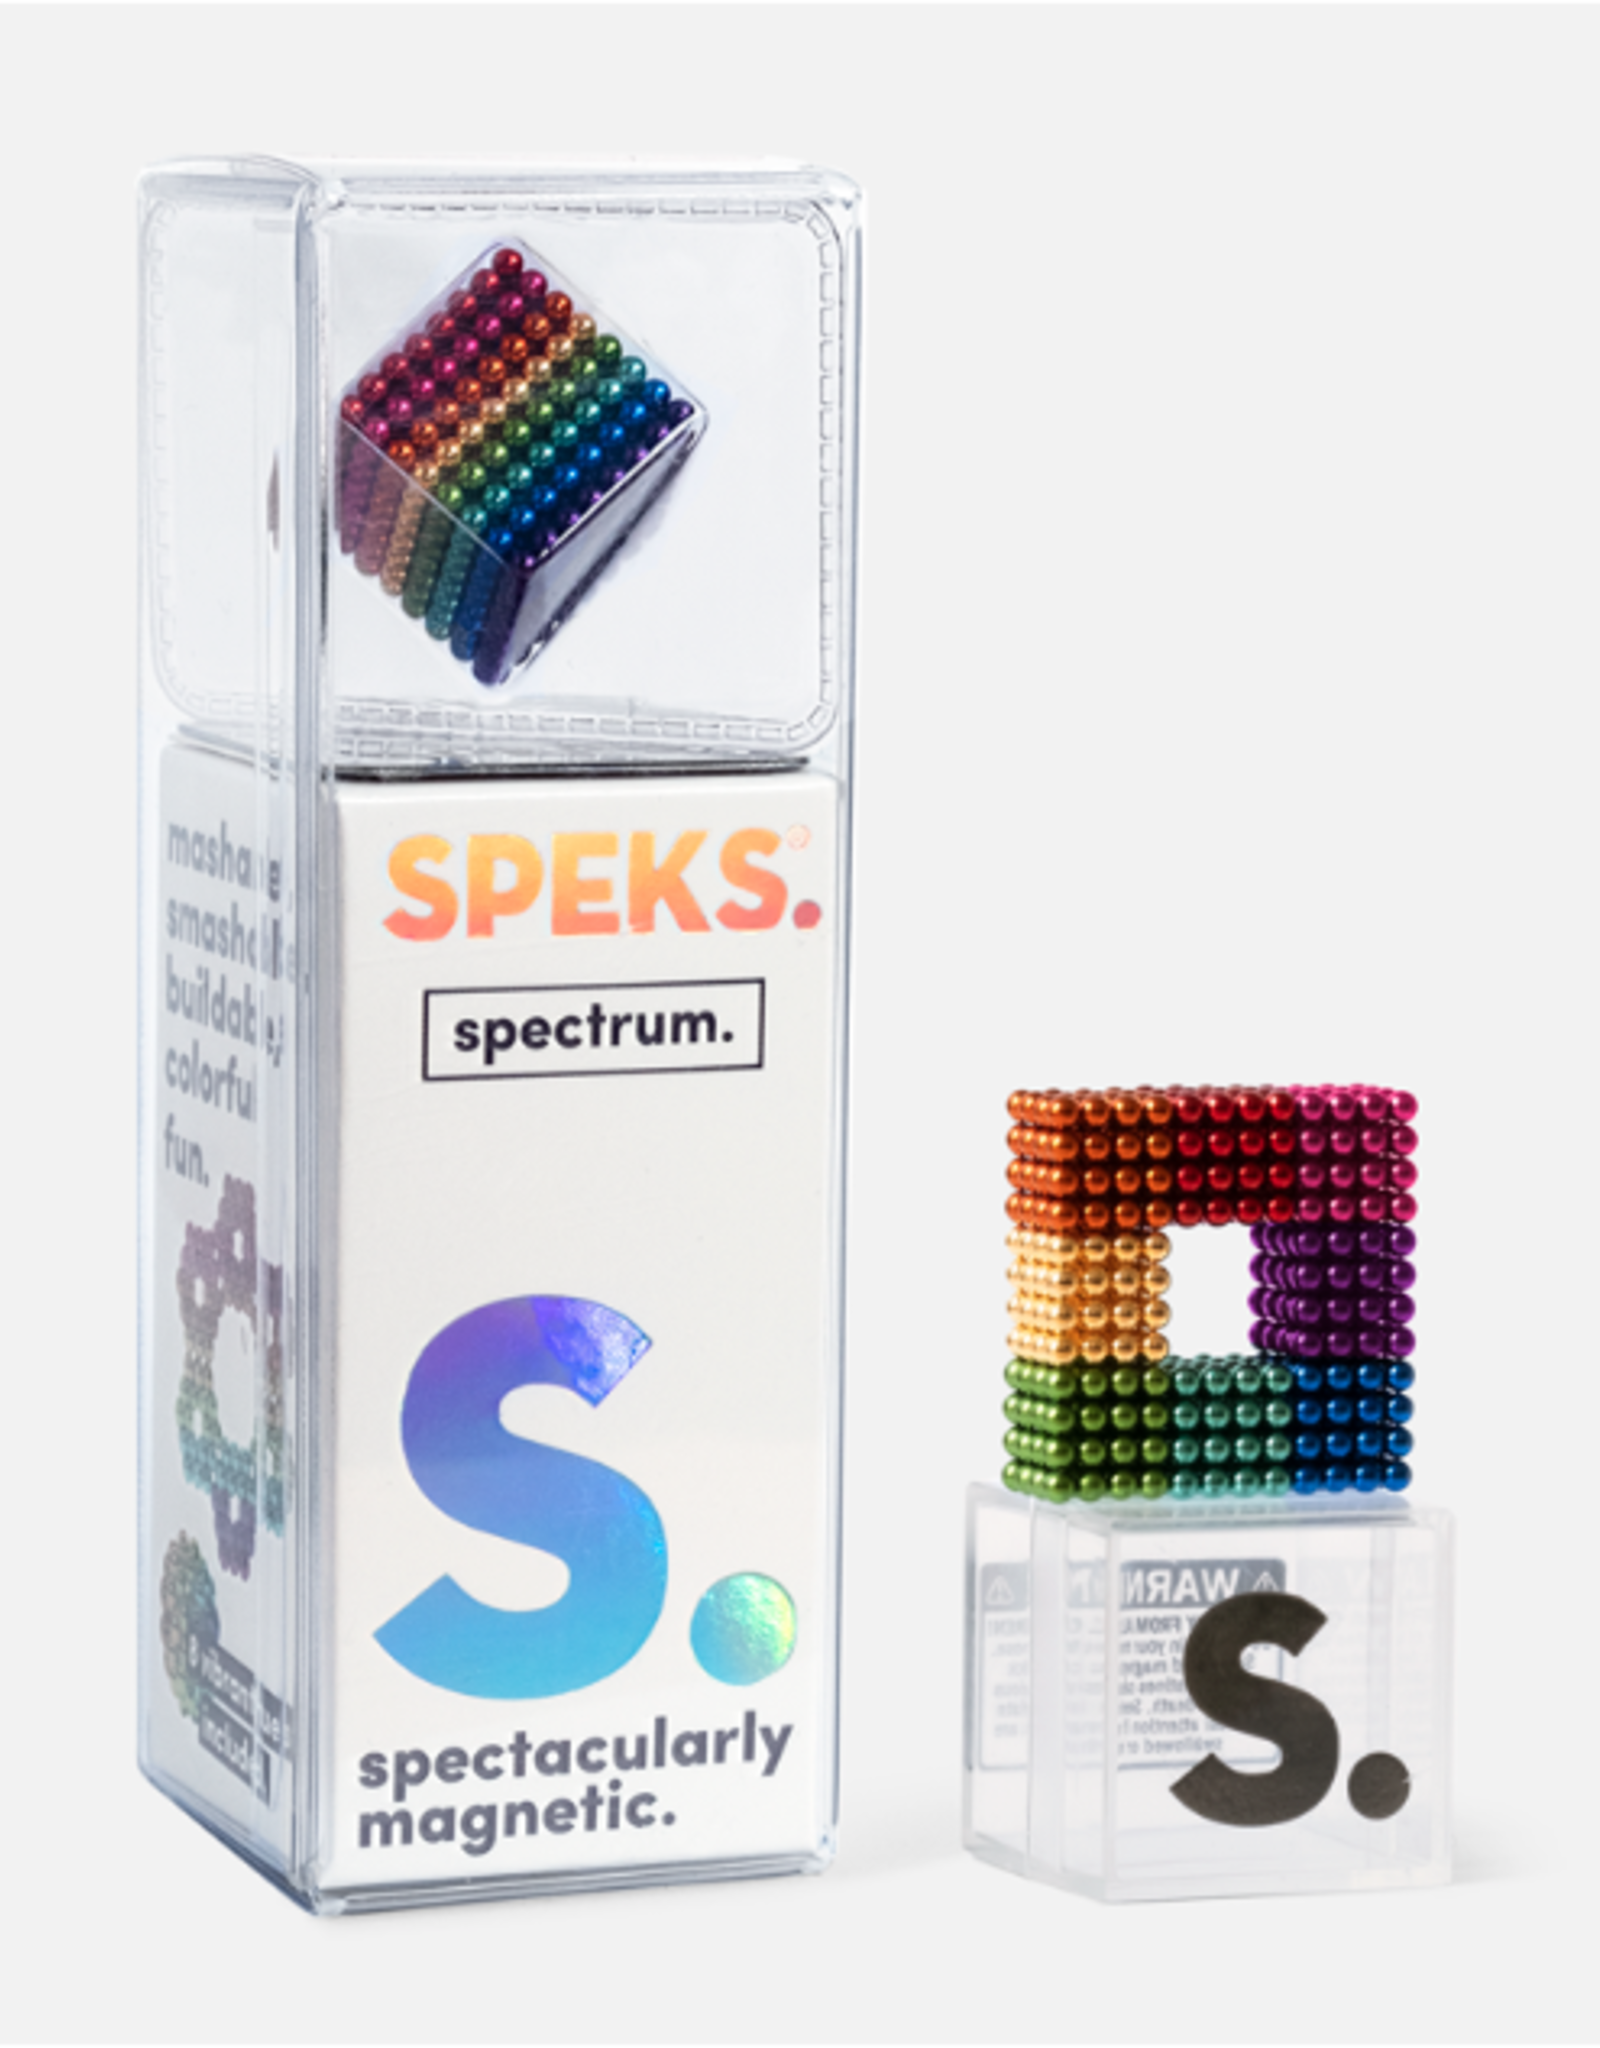 Speks: Spectrum